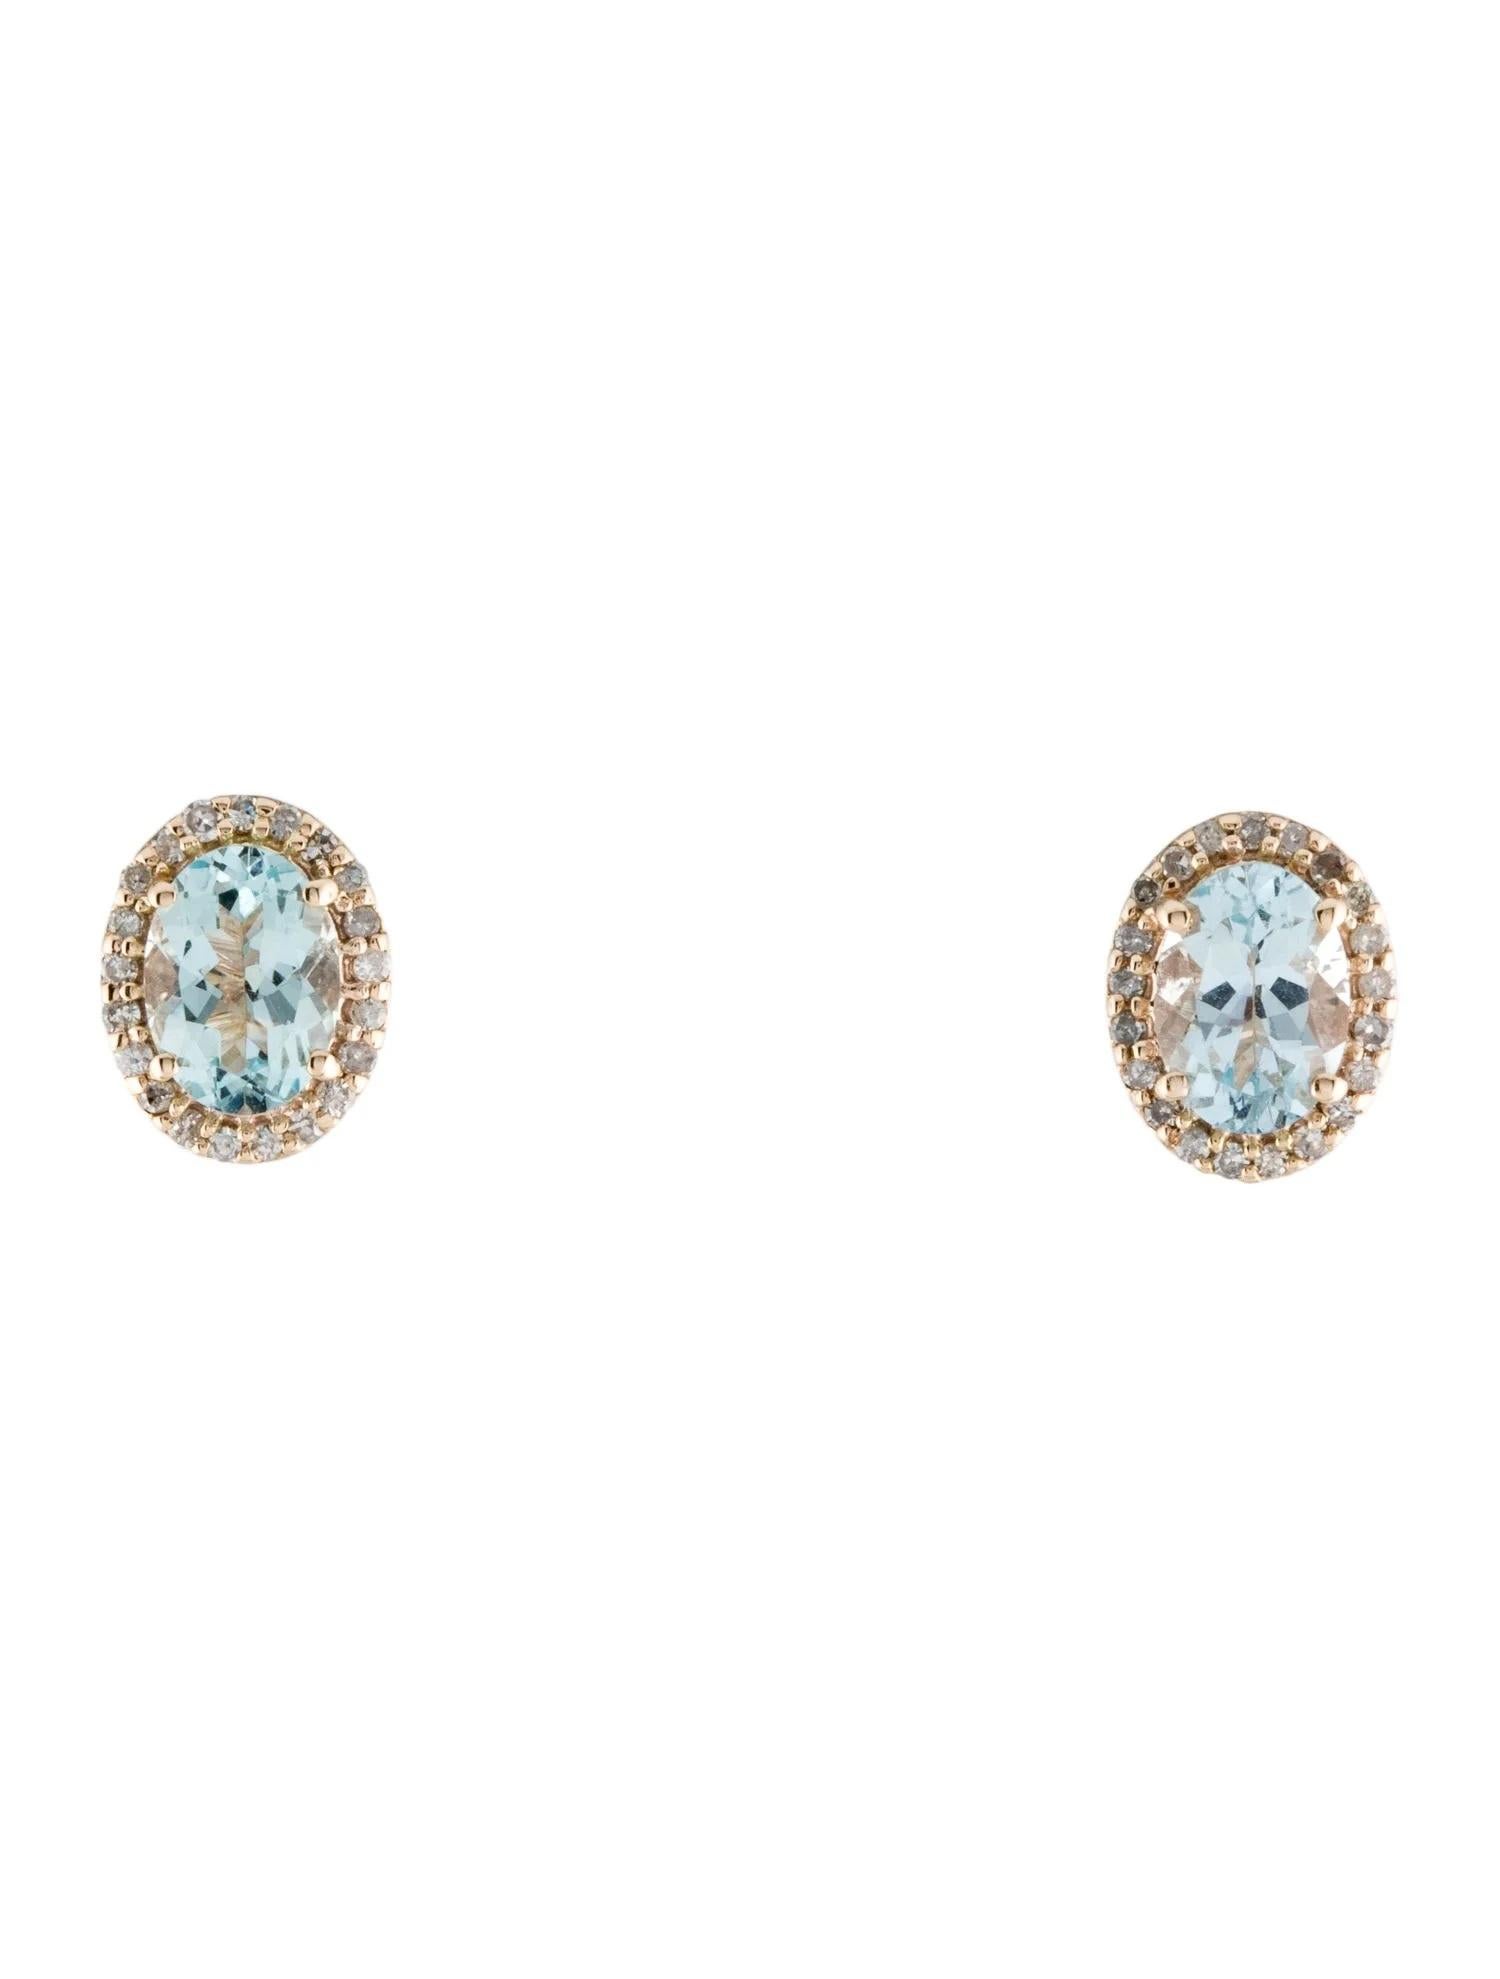 Oval Cut 14K Aquamarine & Diamond Stud Earrings, Oval Blue Stones, 0.16ct Total Diamond W